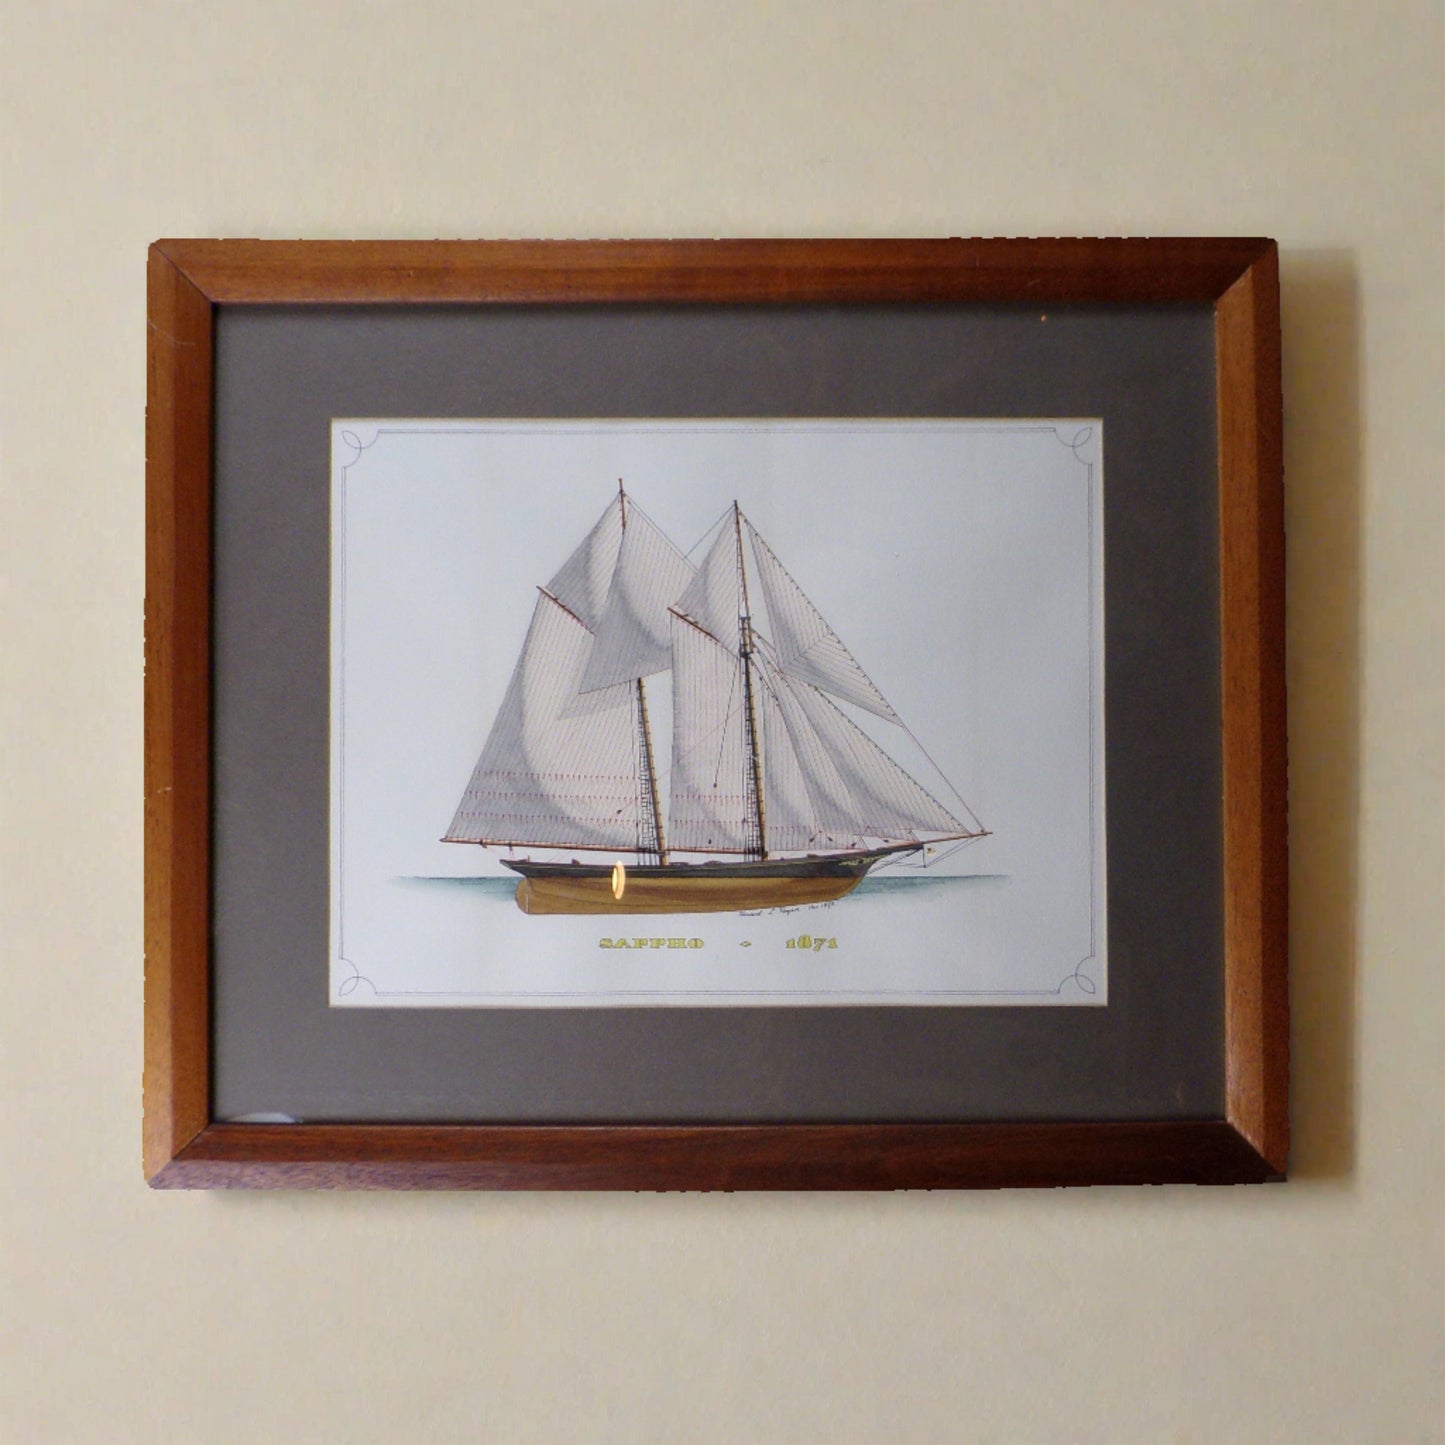 Howard Rogers Framed Ship Art - Sappho 1871